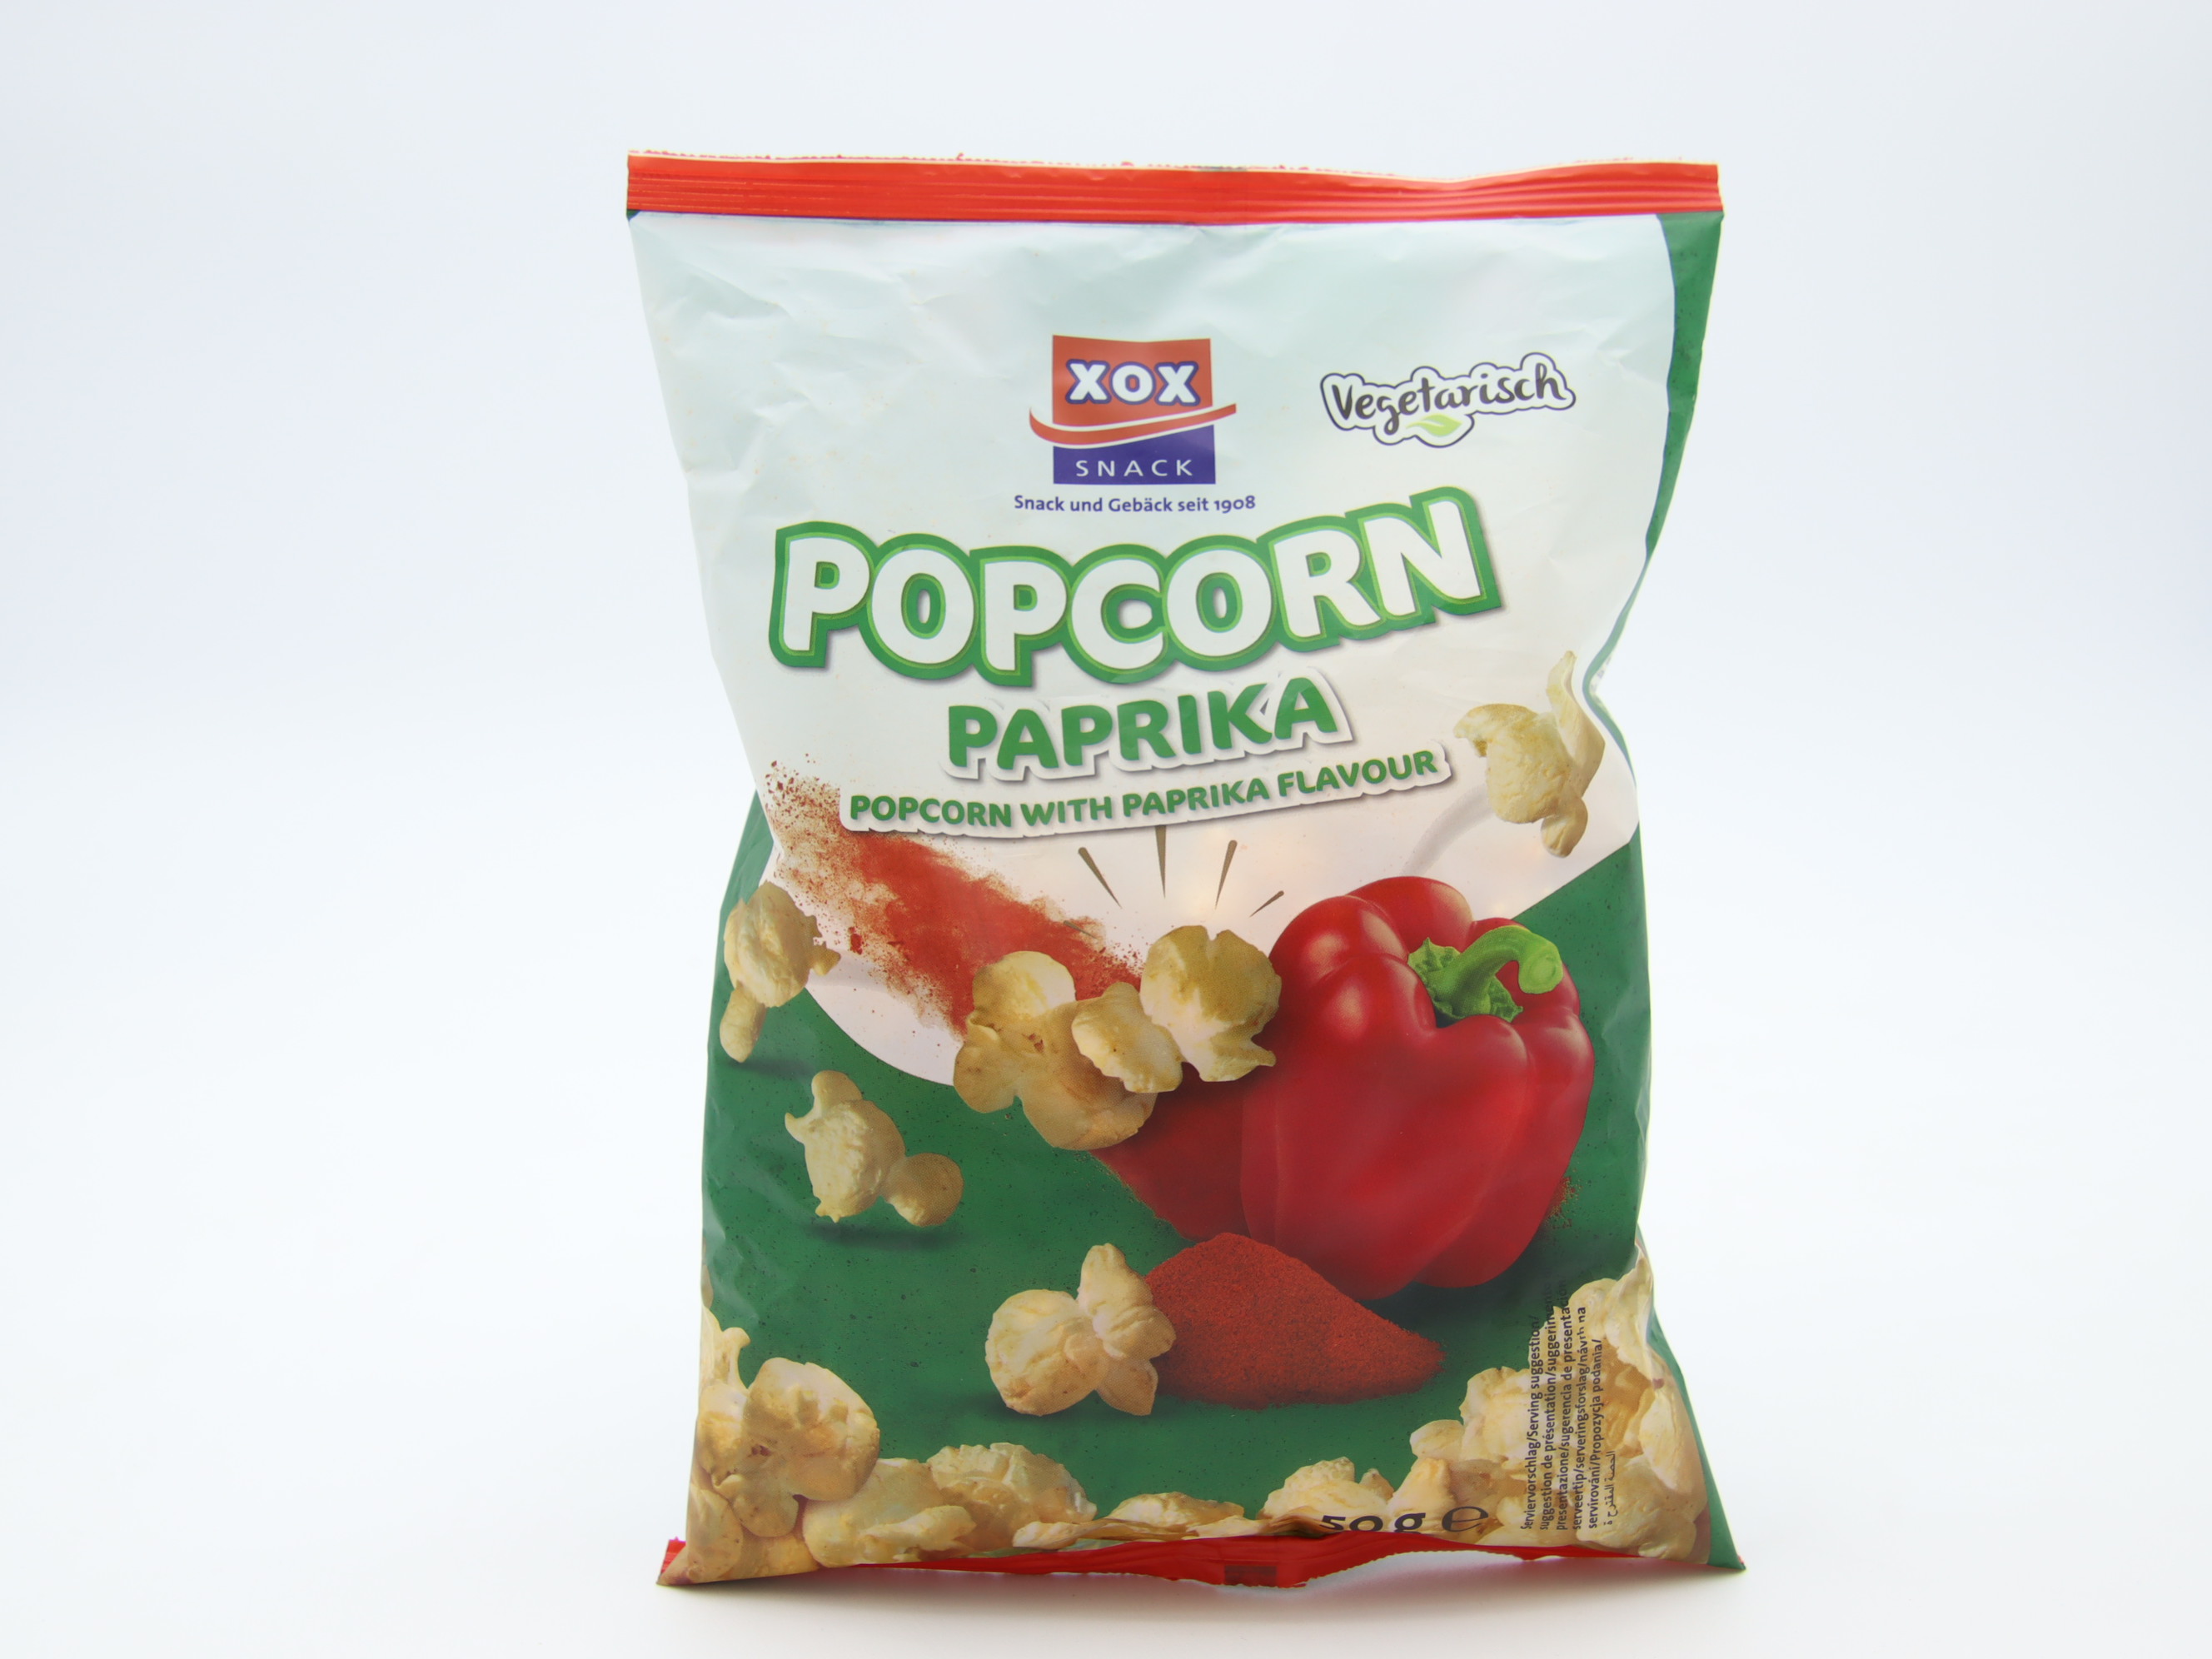 Xox snack popcorn 50g